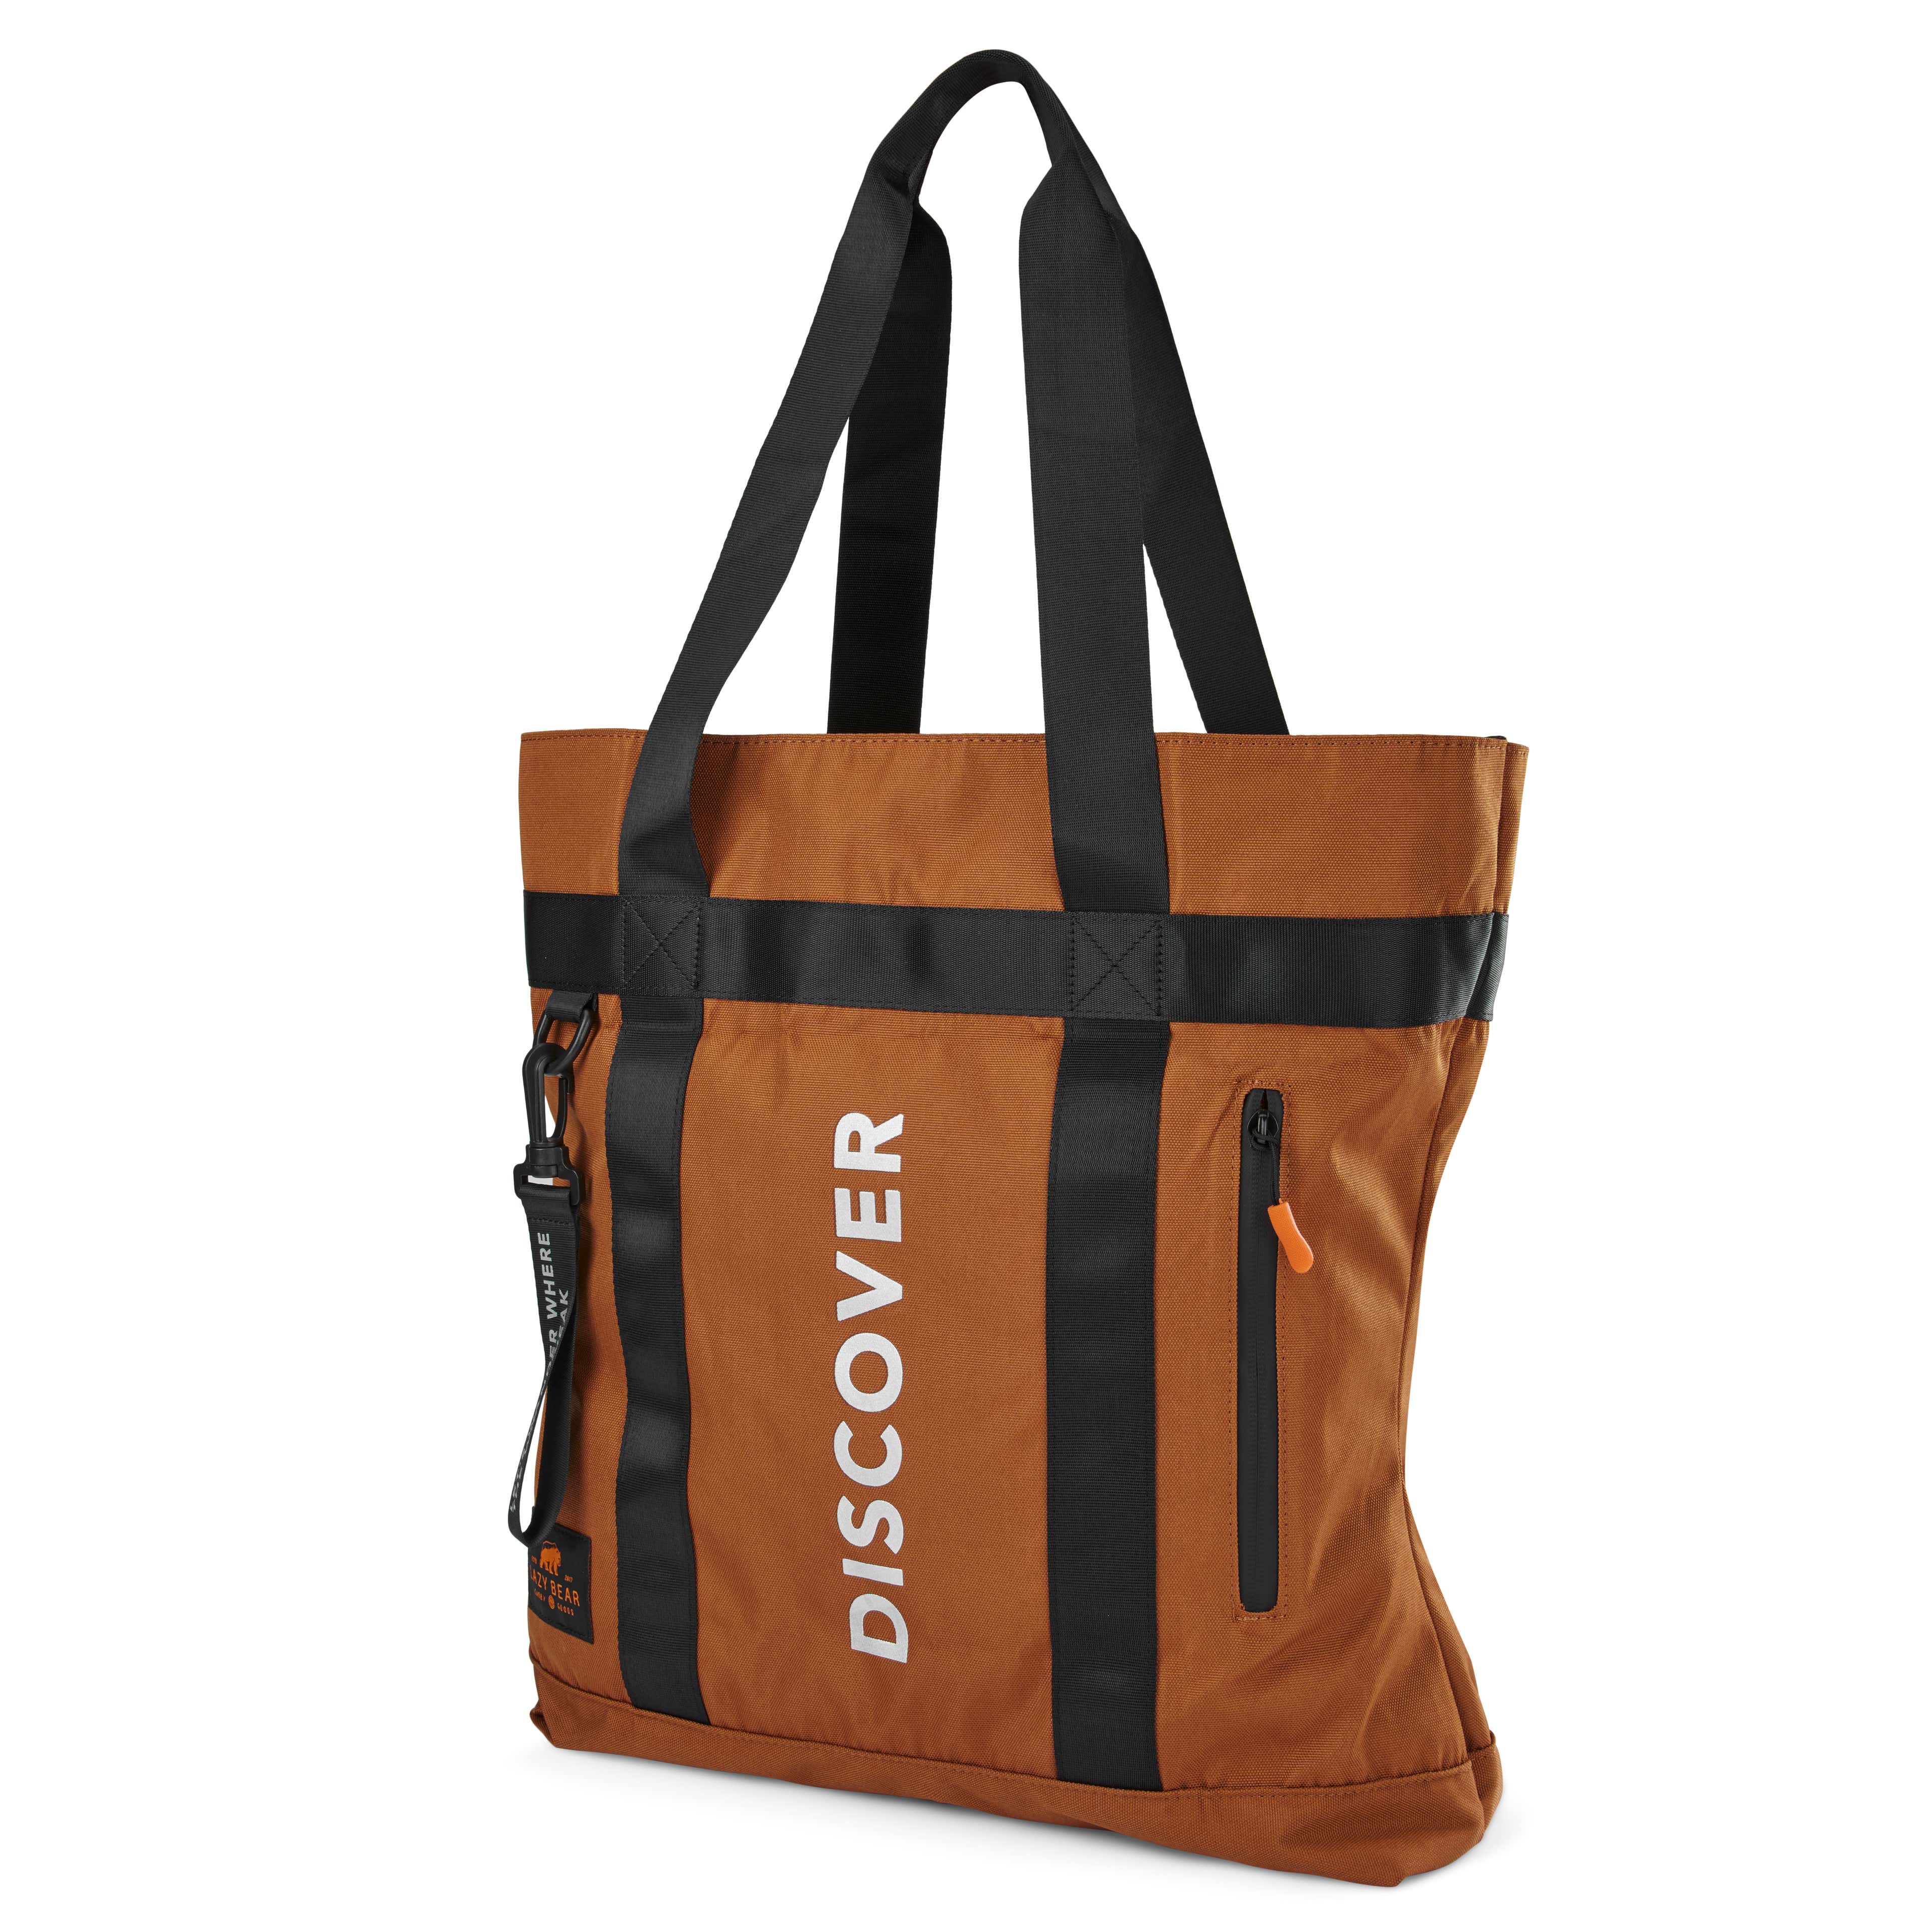 Lamair Brown Foldable Tote Bag